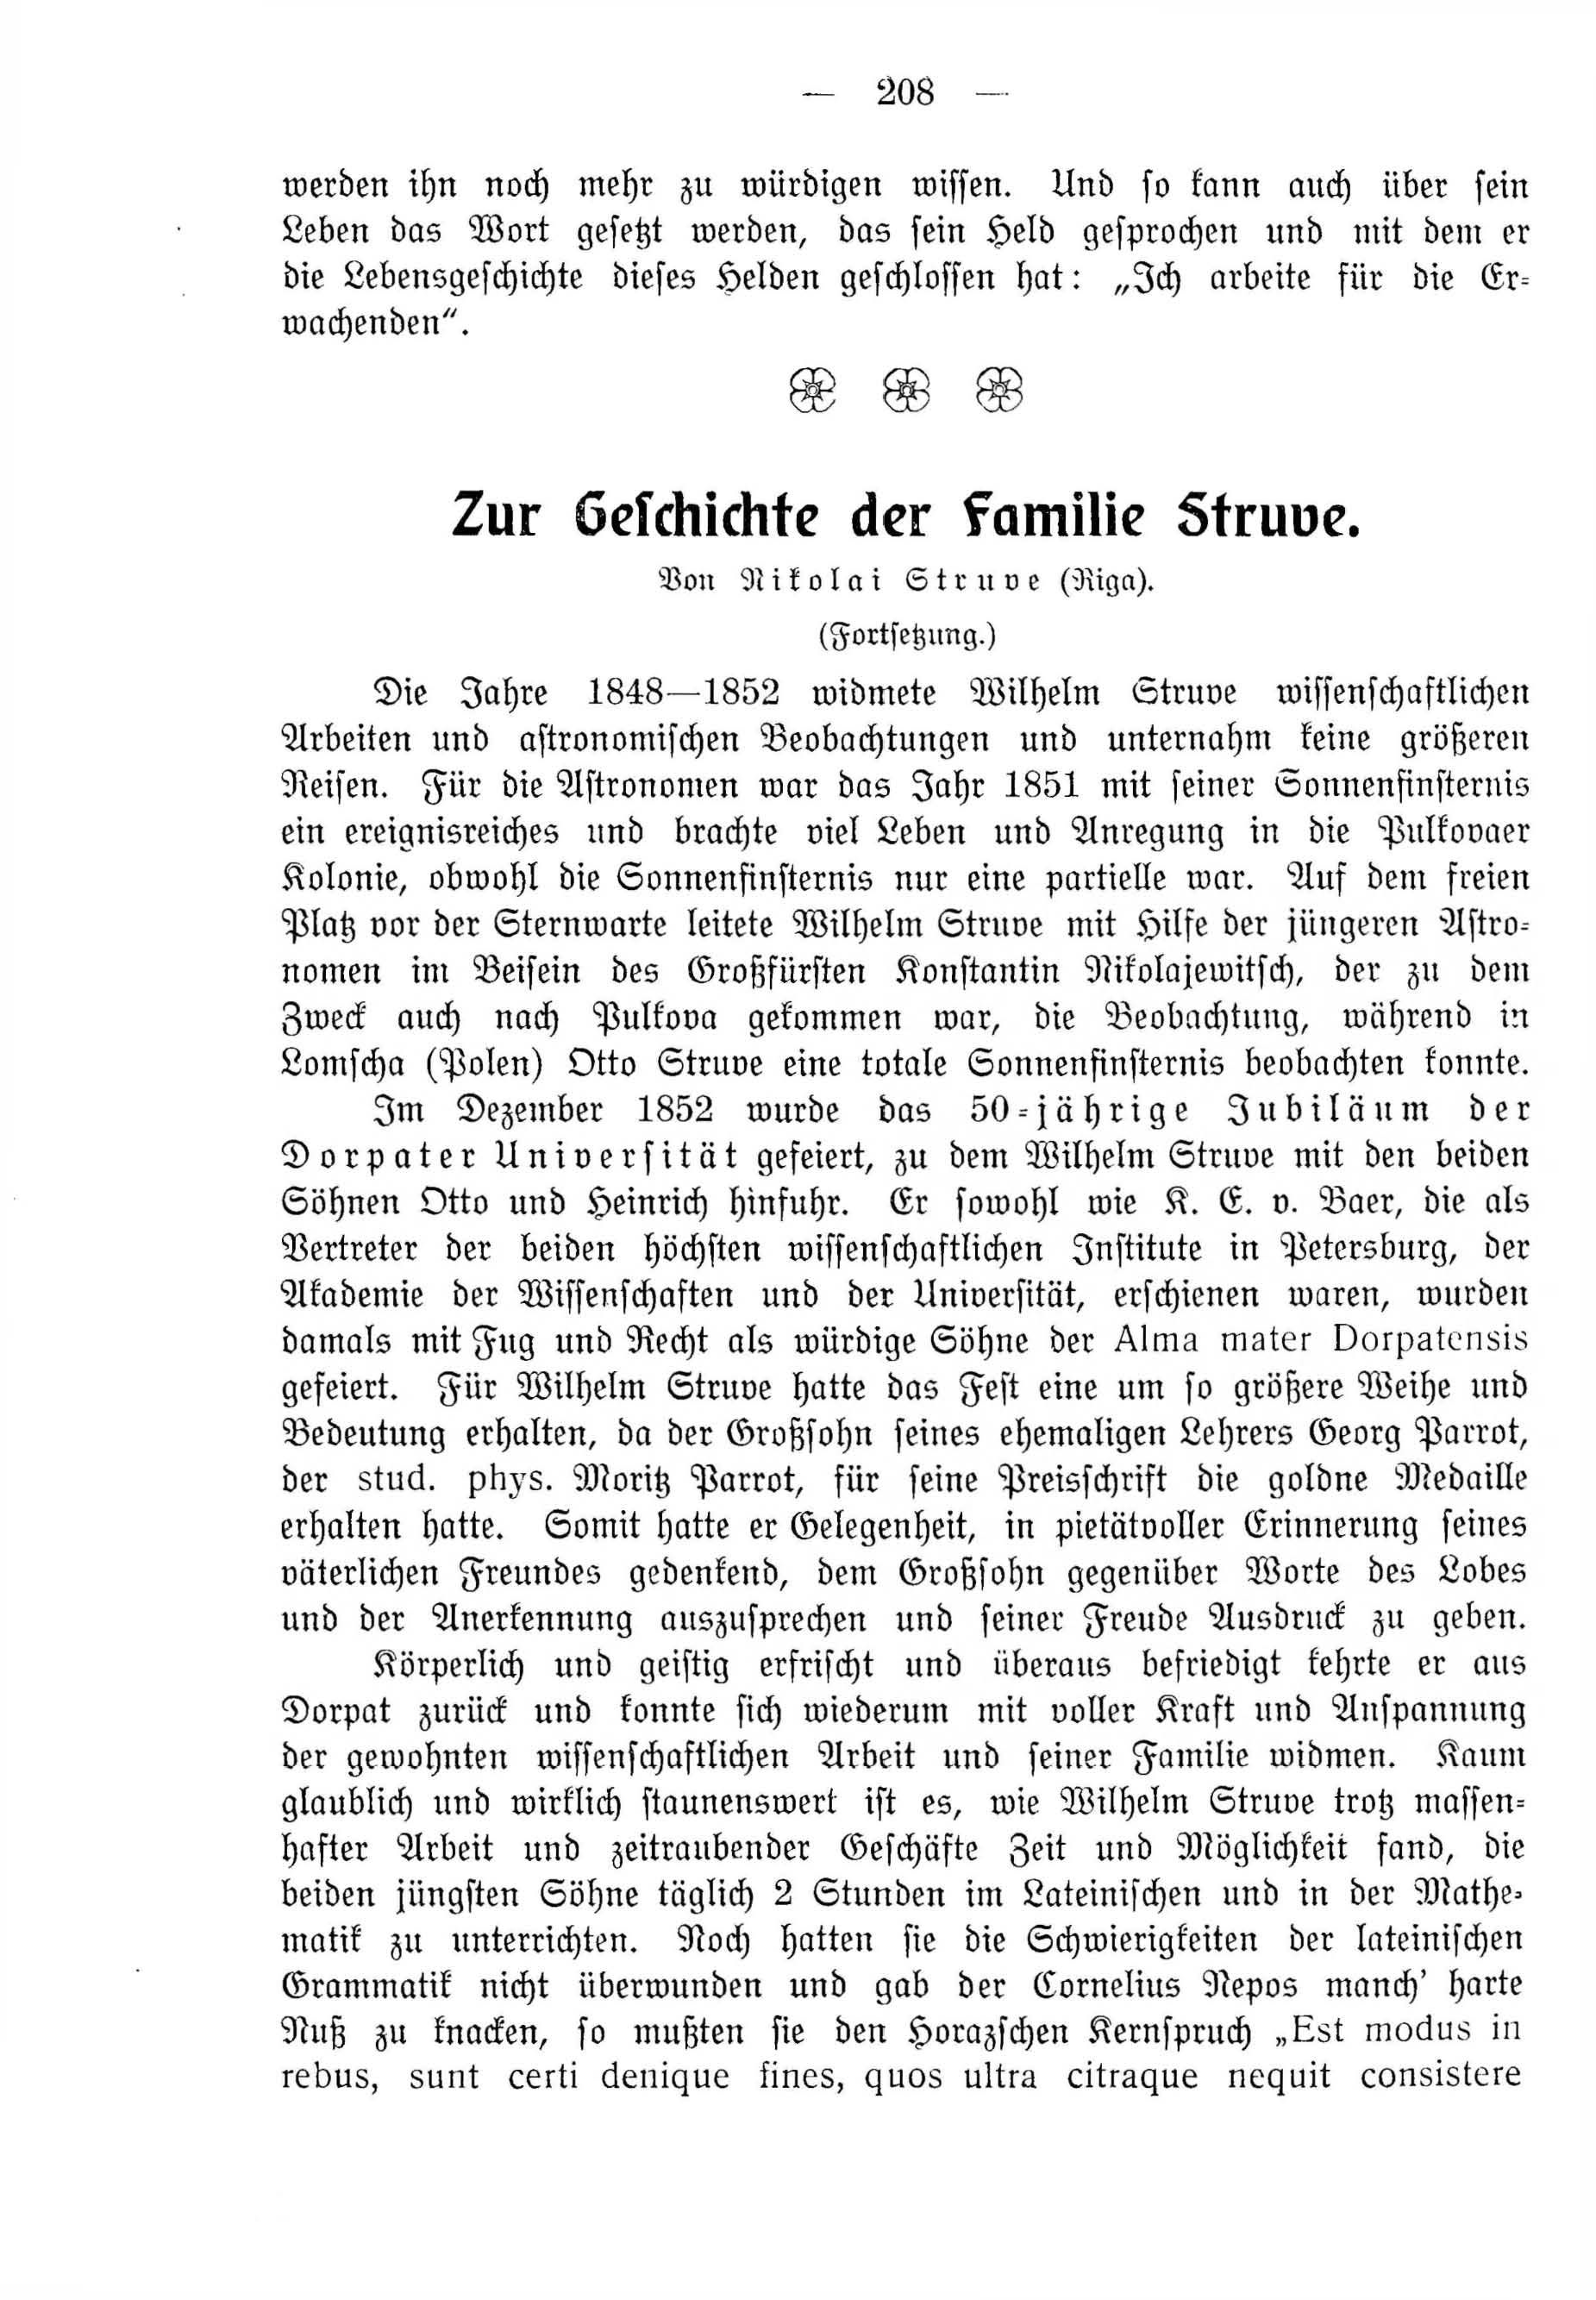 Deutsche Monatsschrift für Russland [4] (1915) | 208. (208) Main body of text